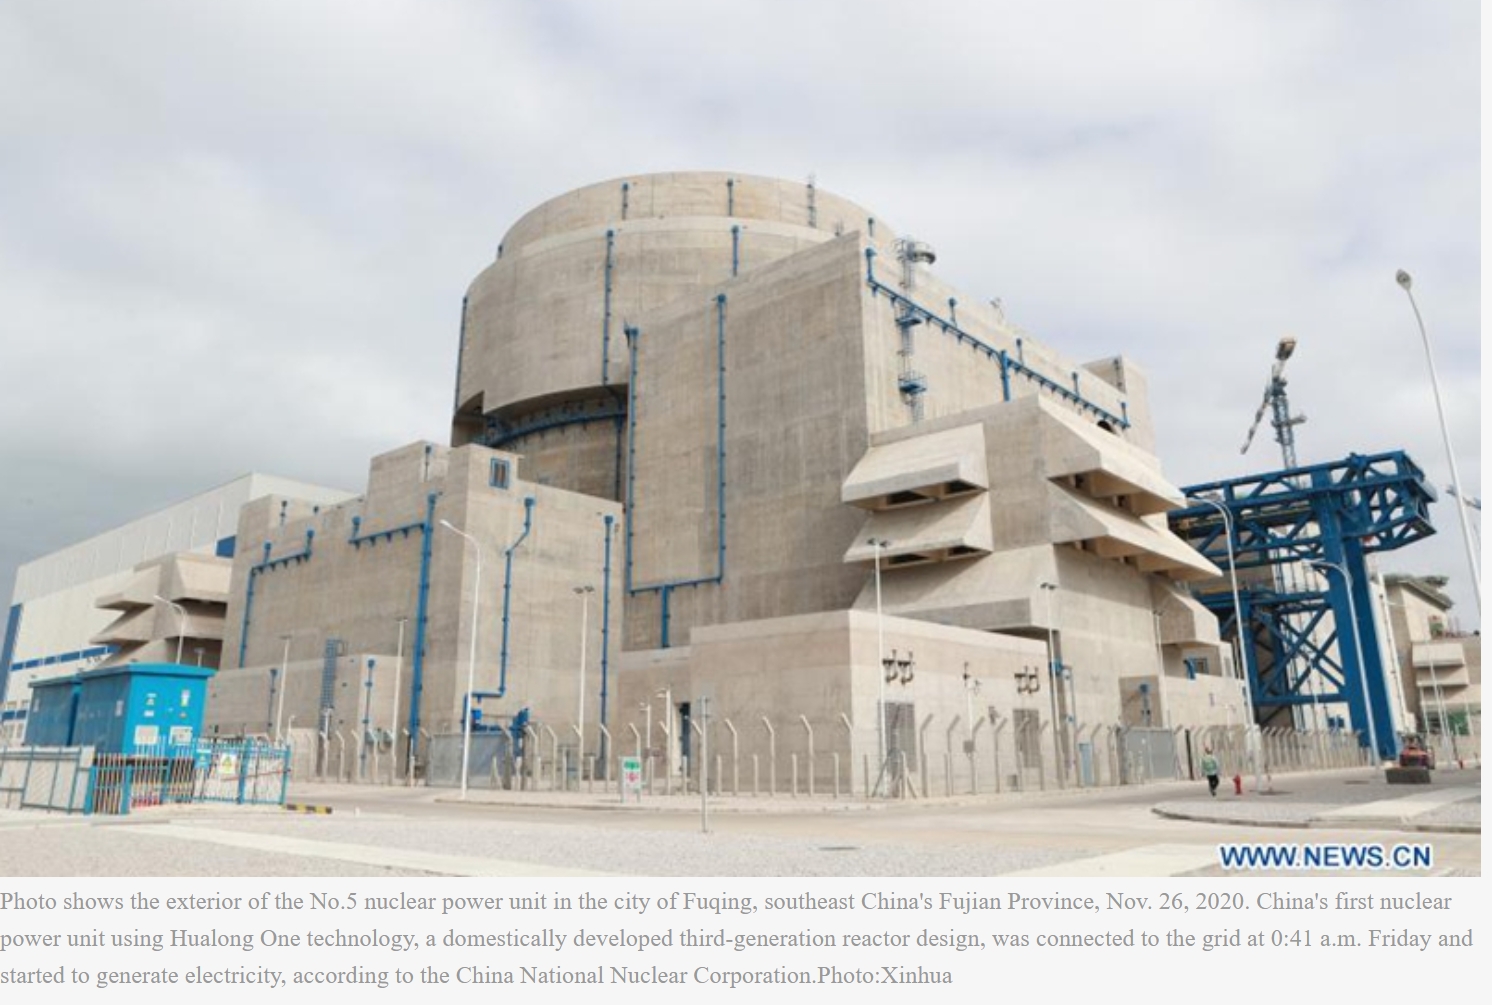 No 5 nuclear power unit in Fuqing, Fujian 20201126.jpg